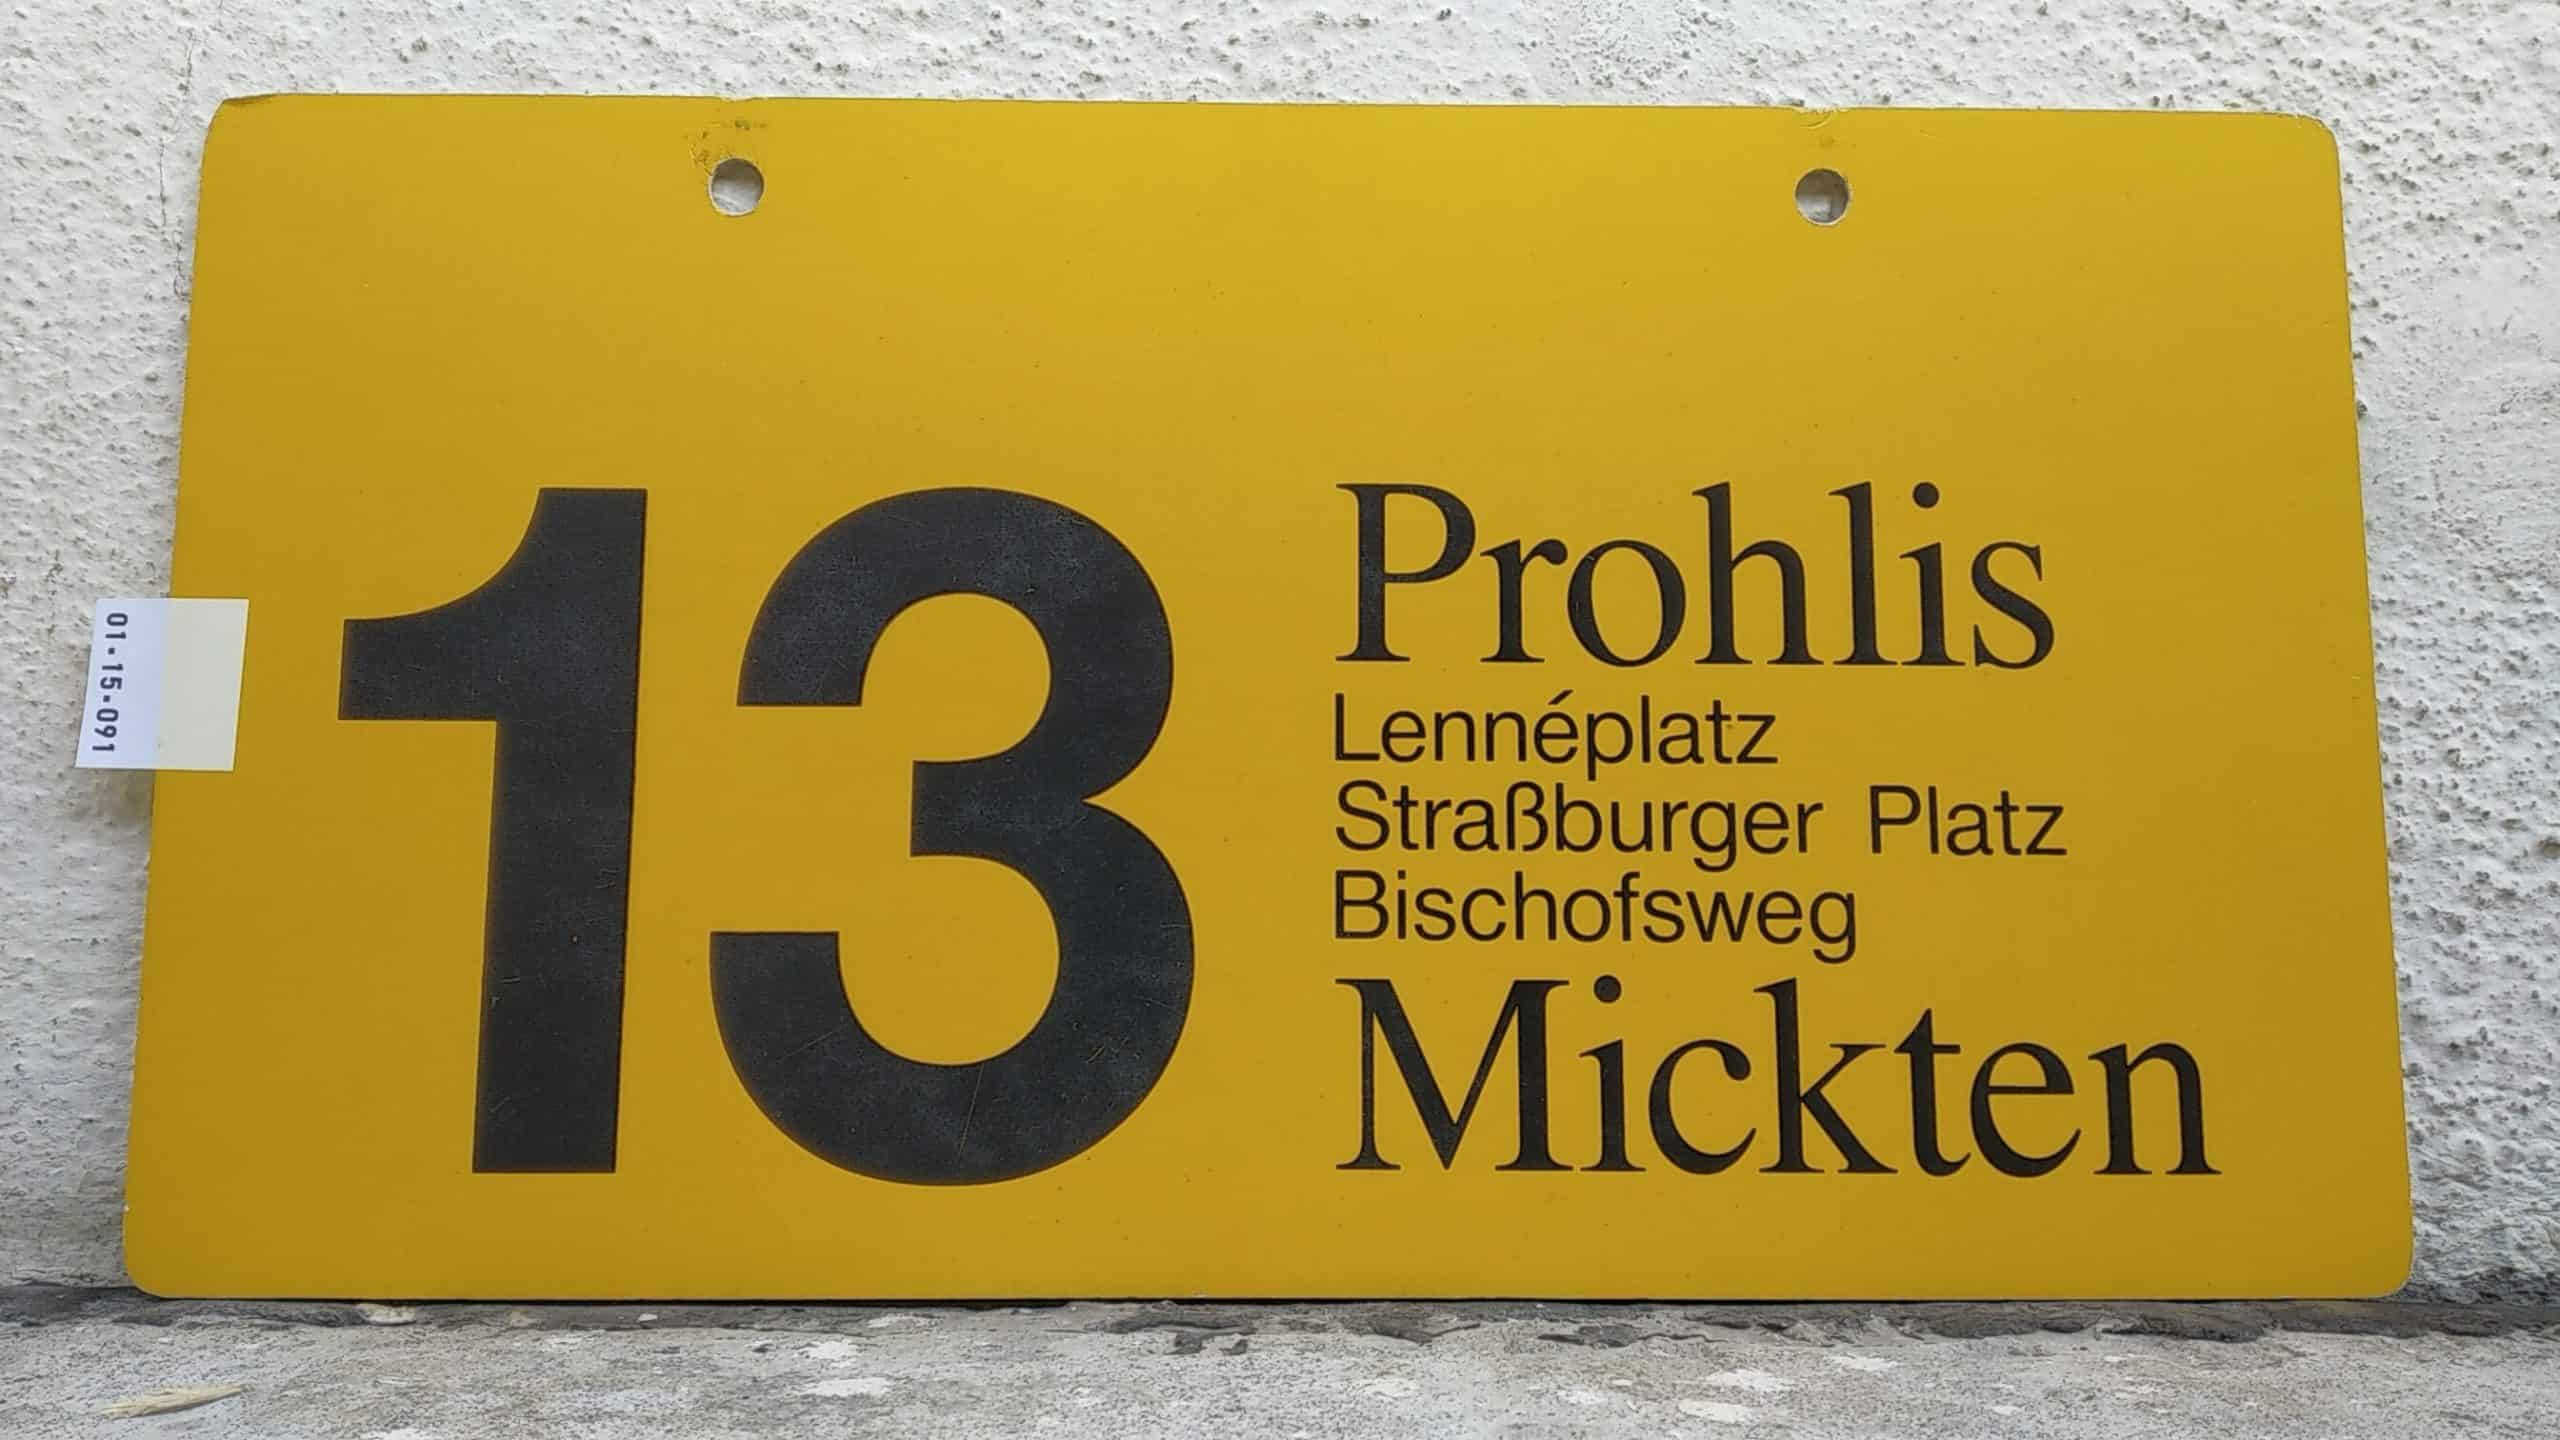 Ein seltenes Straßenbahn-Linienschild aus Dresden der Linie 13 von Prohlis nach Mickten #1